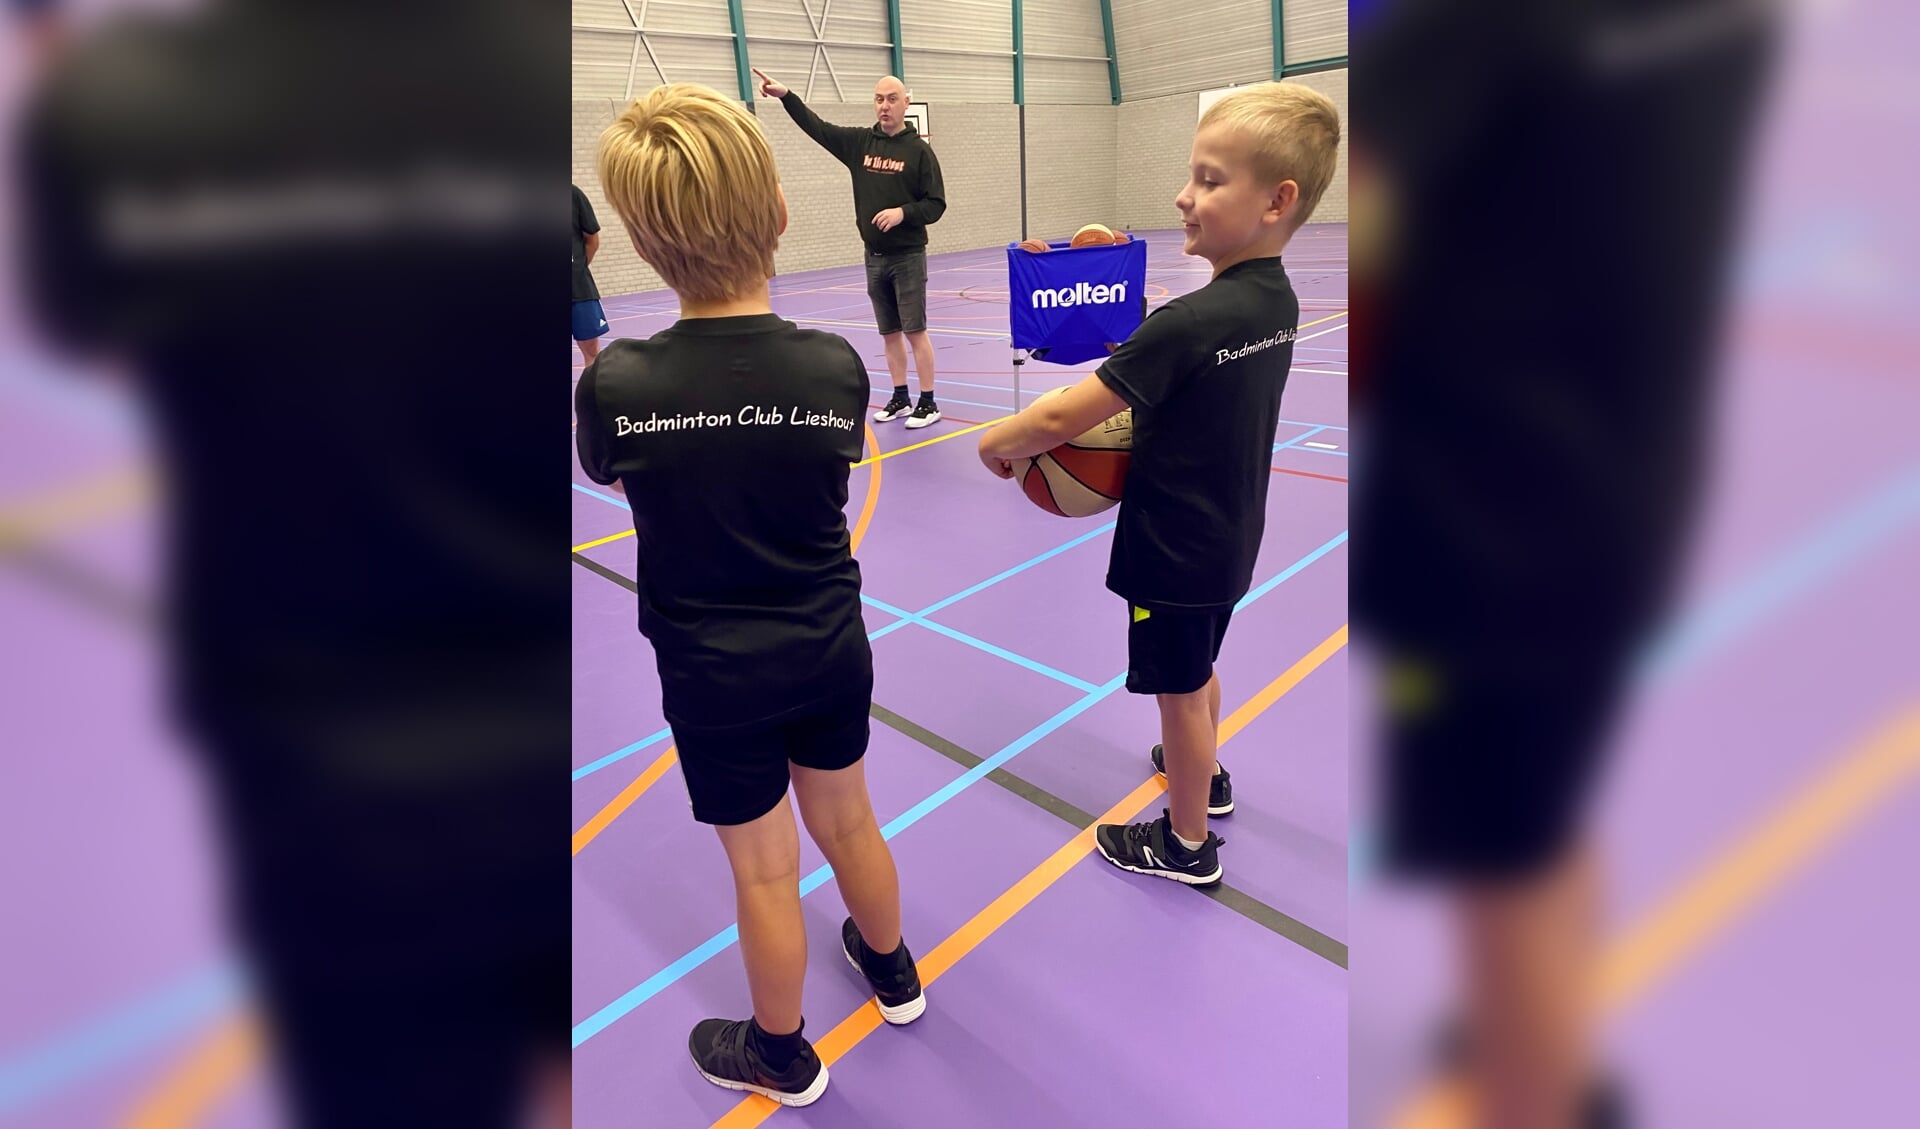 Basketballende badmintonners en badmintonnende basketballers maakten in Lieshout kennis met elkaars sport.